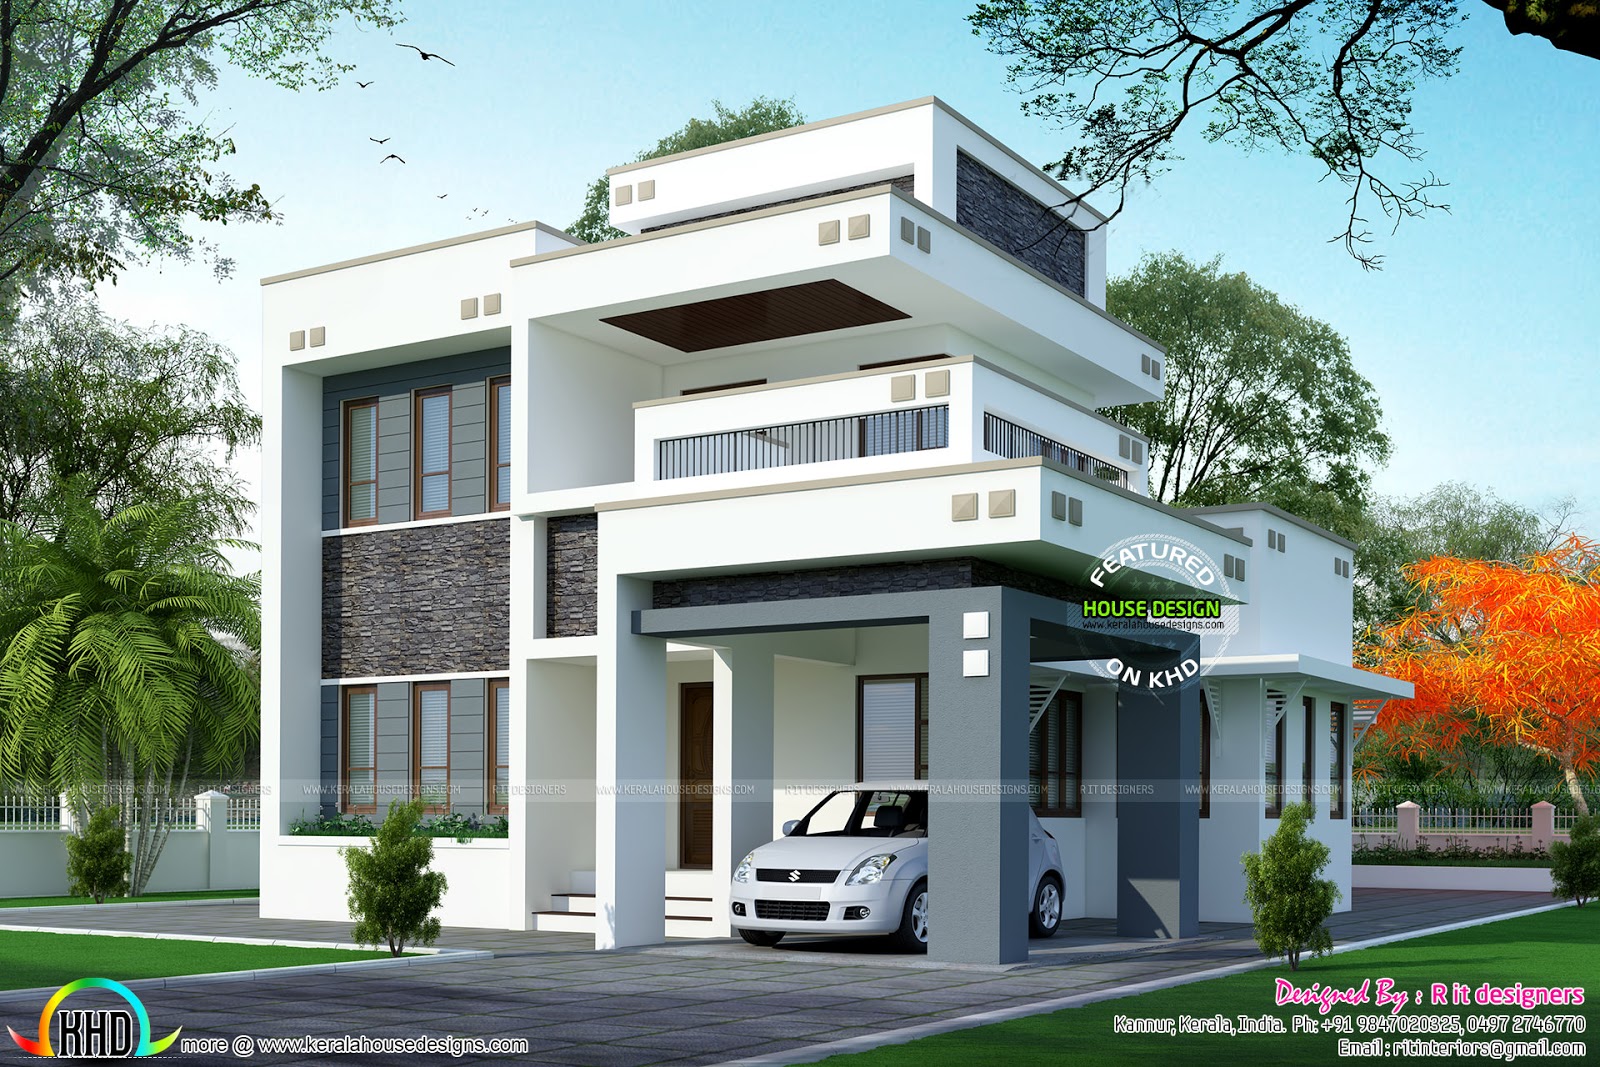  1800  sq  ft  floor 3 bedroom home  with floor plan  Kerala  